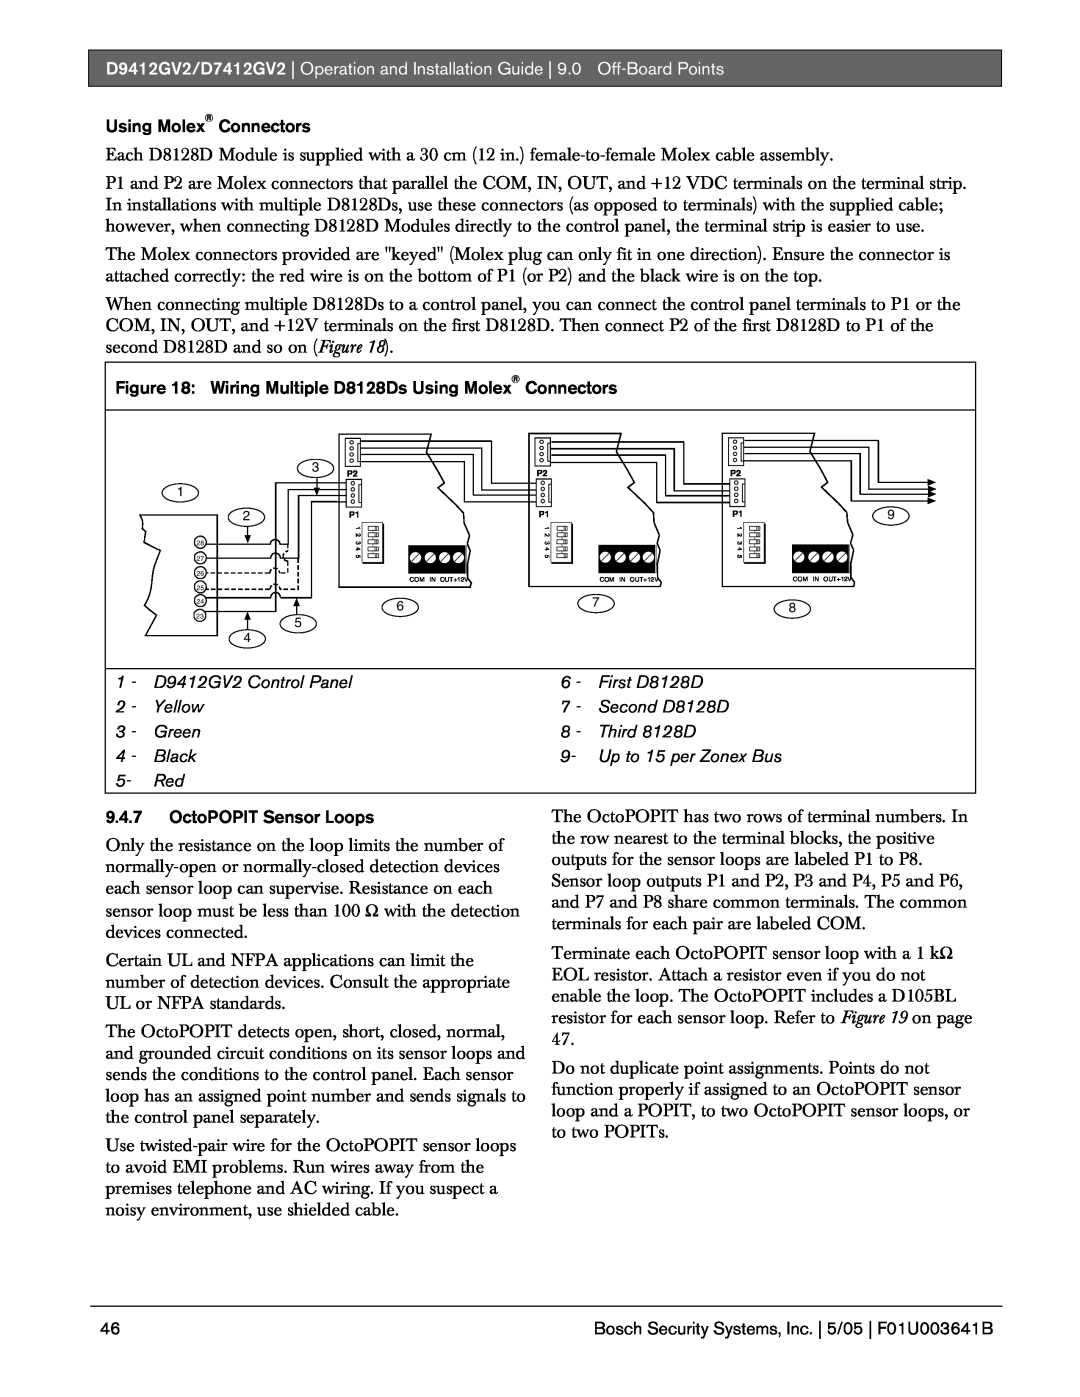 Bosch Appliances D9412GV2 manual Using Molex Connectors, 9.4.7OctoPOPIT Sensor Loops 